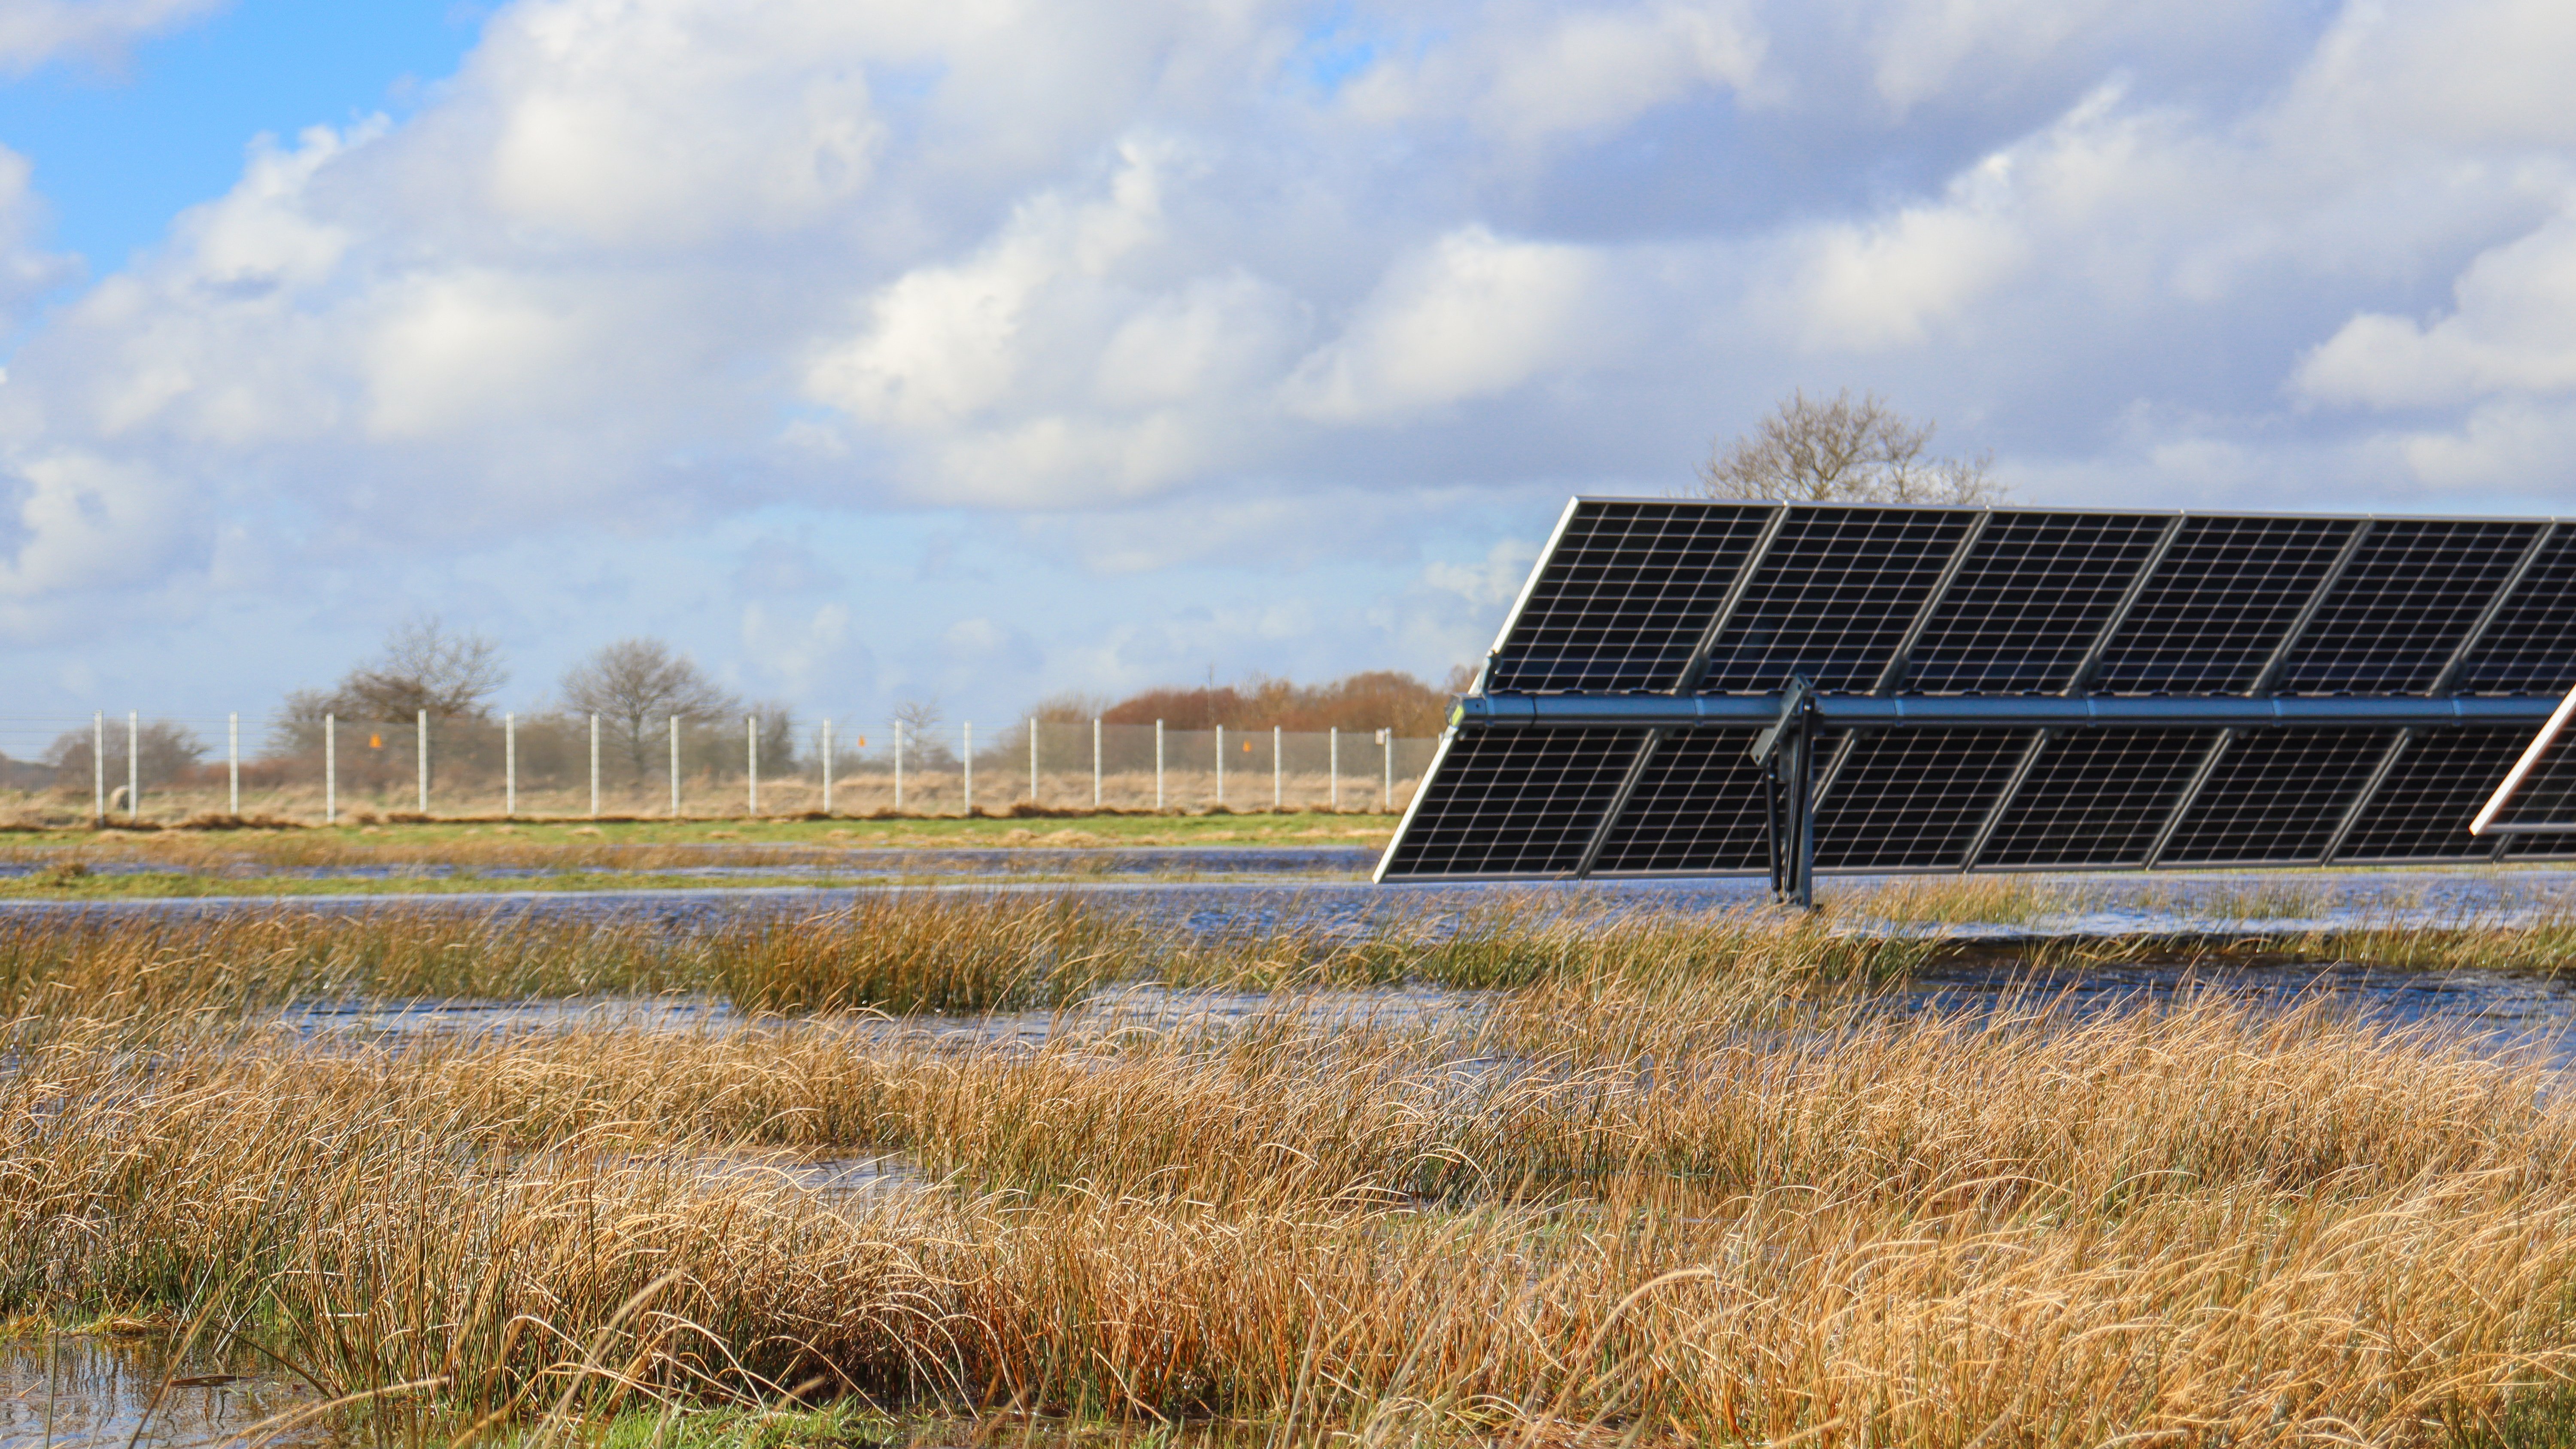 Solarpark Lottorf in Schleswig-Holstein